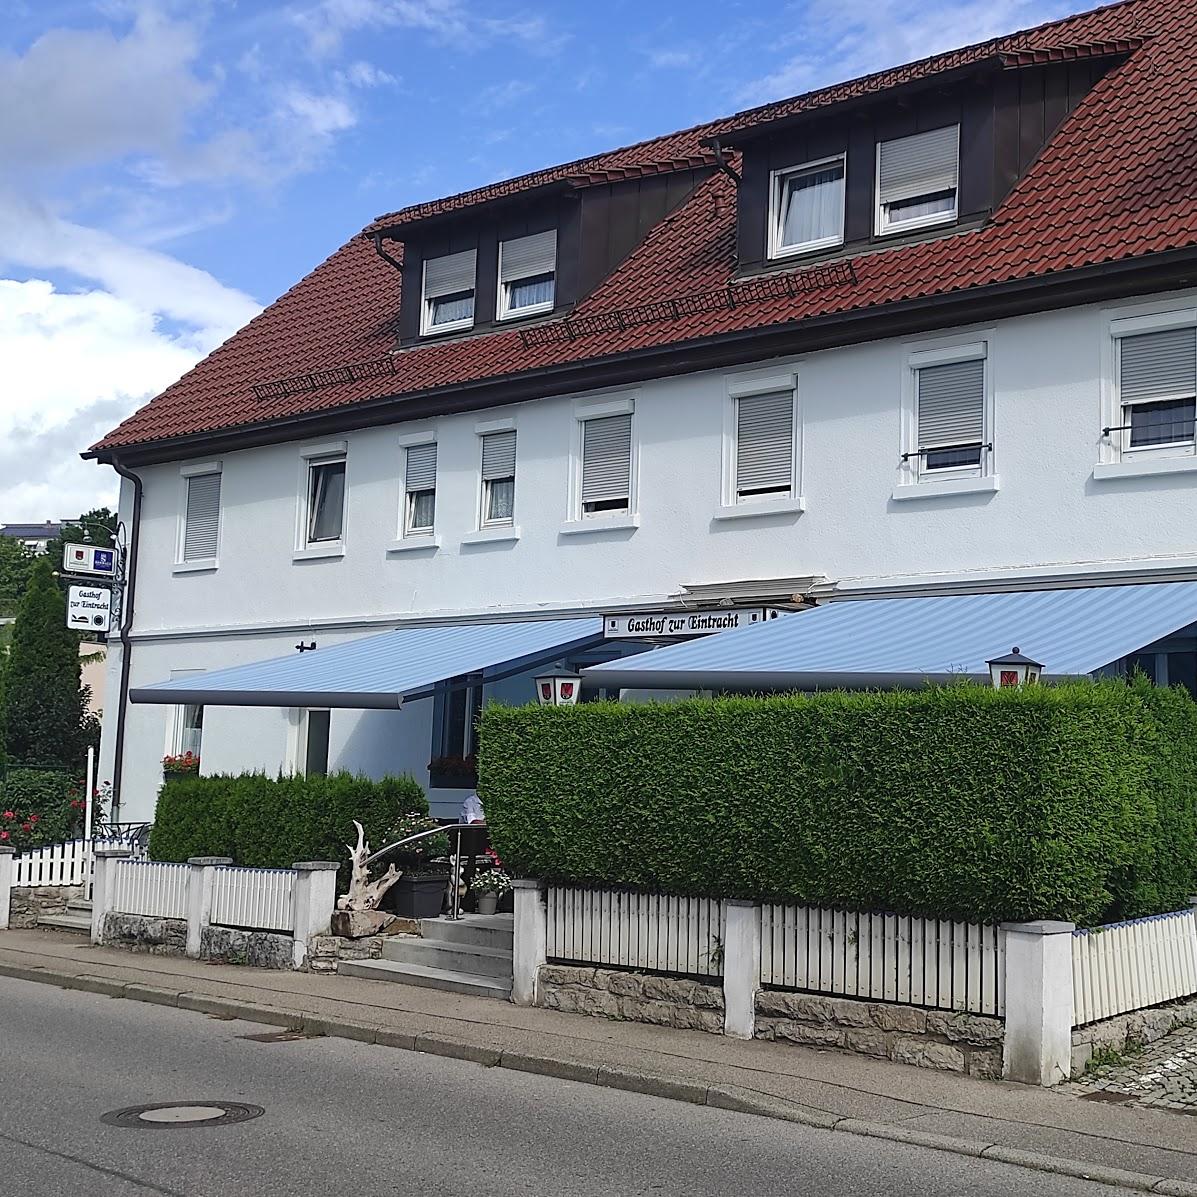 Restaurant "Gasthof zur Eintracht" in Backnang